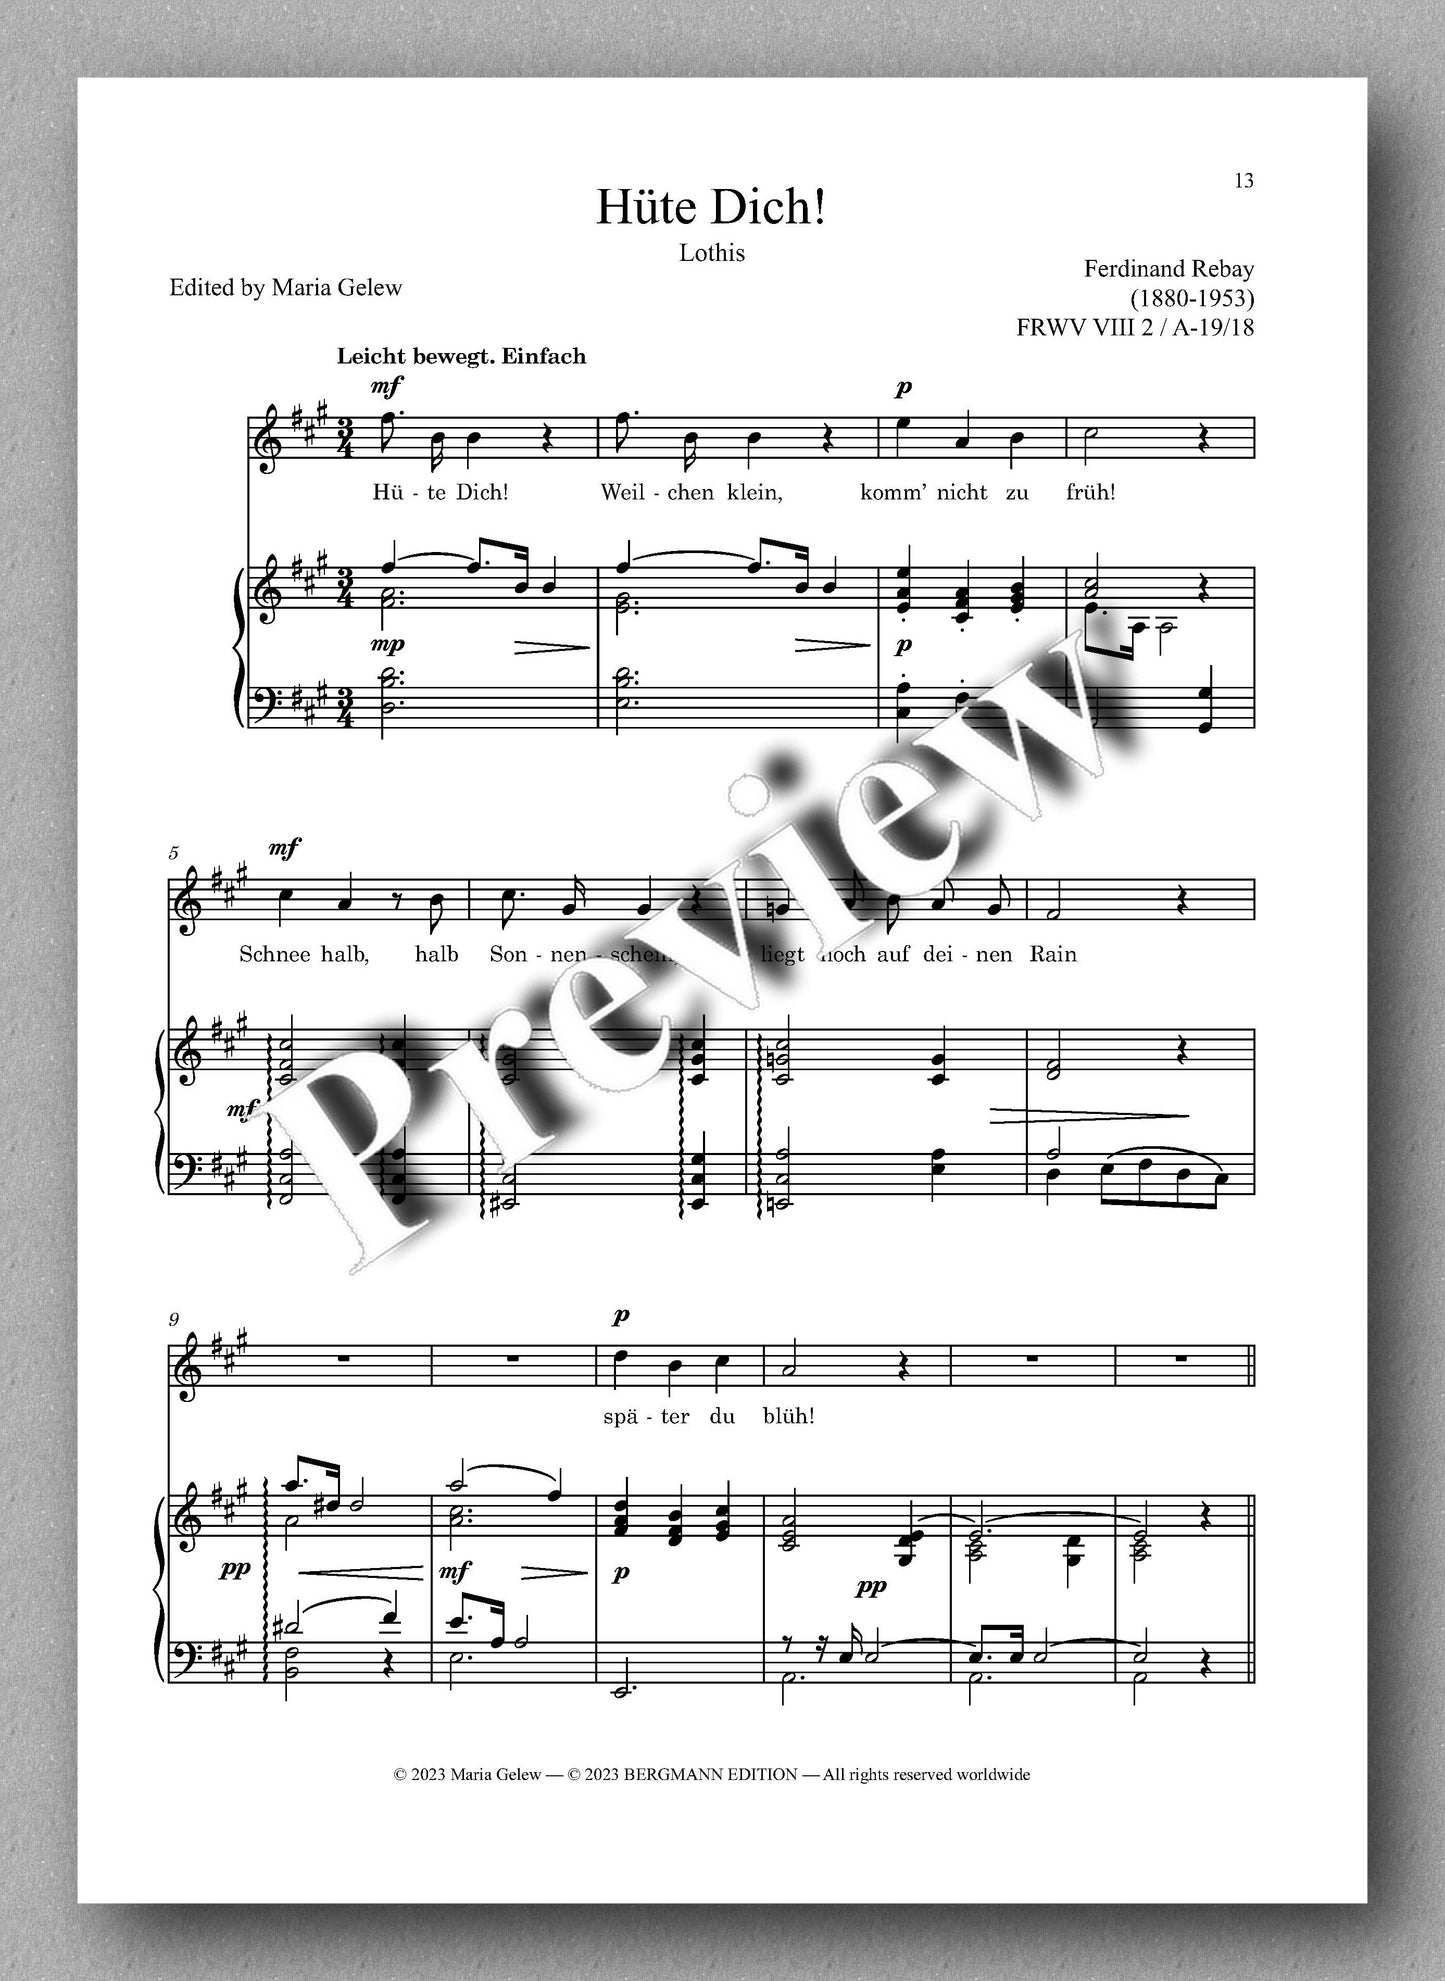 Ferdinand Rebay, Solo Lieder nach Gedichten verschiedener Dichter - preview of the music score 2